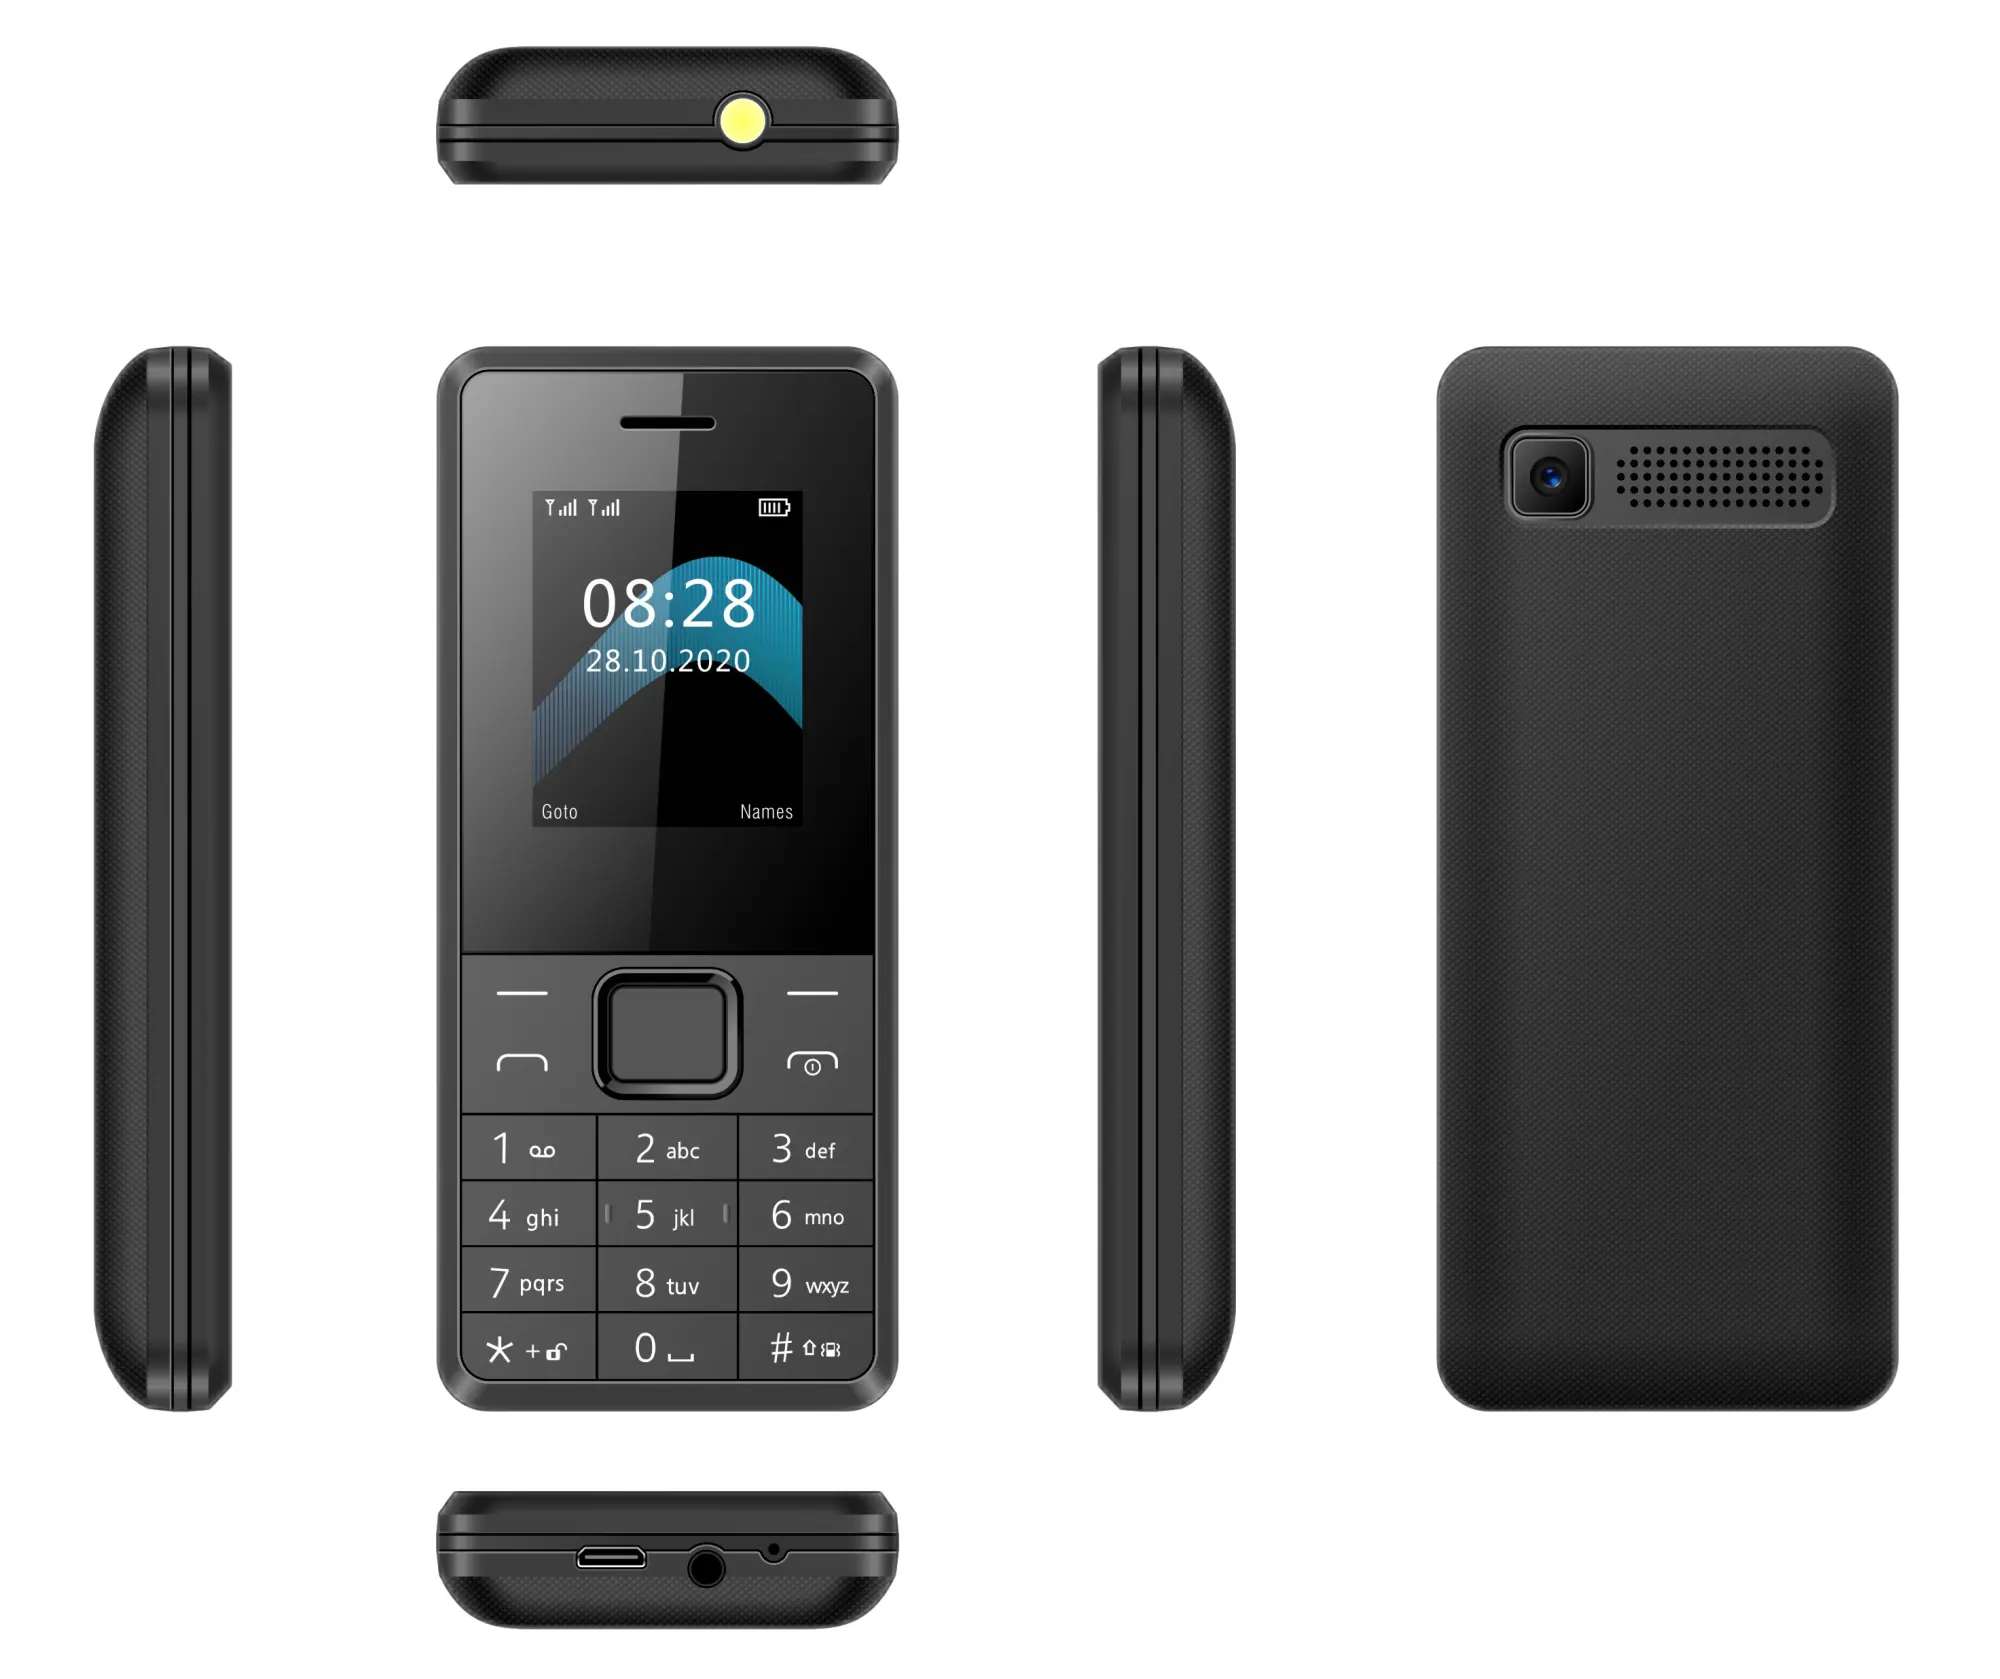 עבור איטל 2160 סמארטפון 1. 77 אינץ טלפון סלולרי 2G זול קטן גודל כפולה ה-sim Gsm נייד מקלדת Qwerty טלפונים